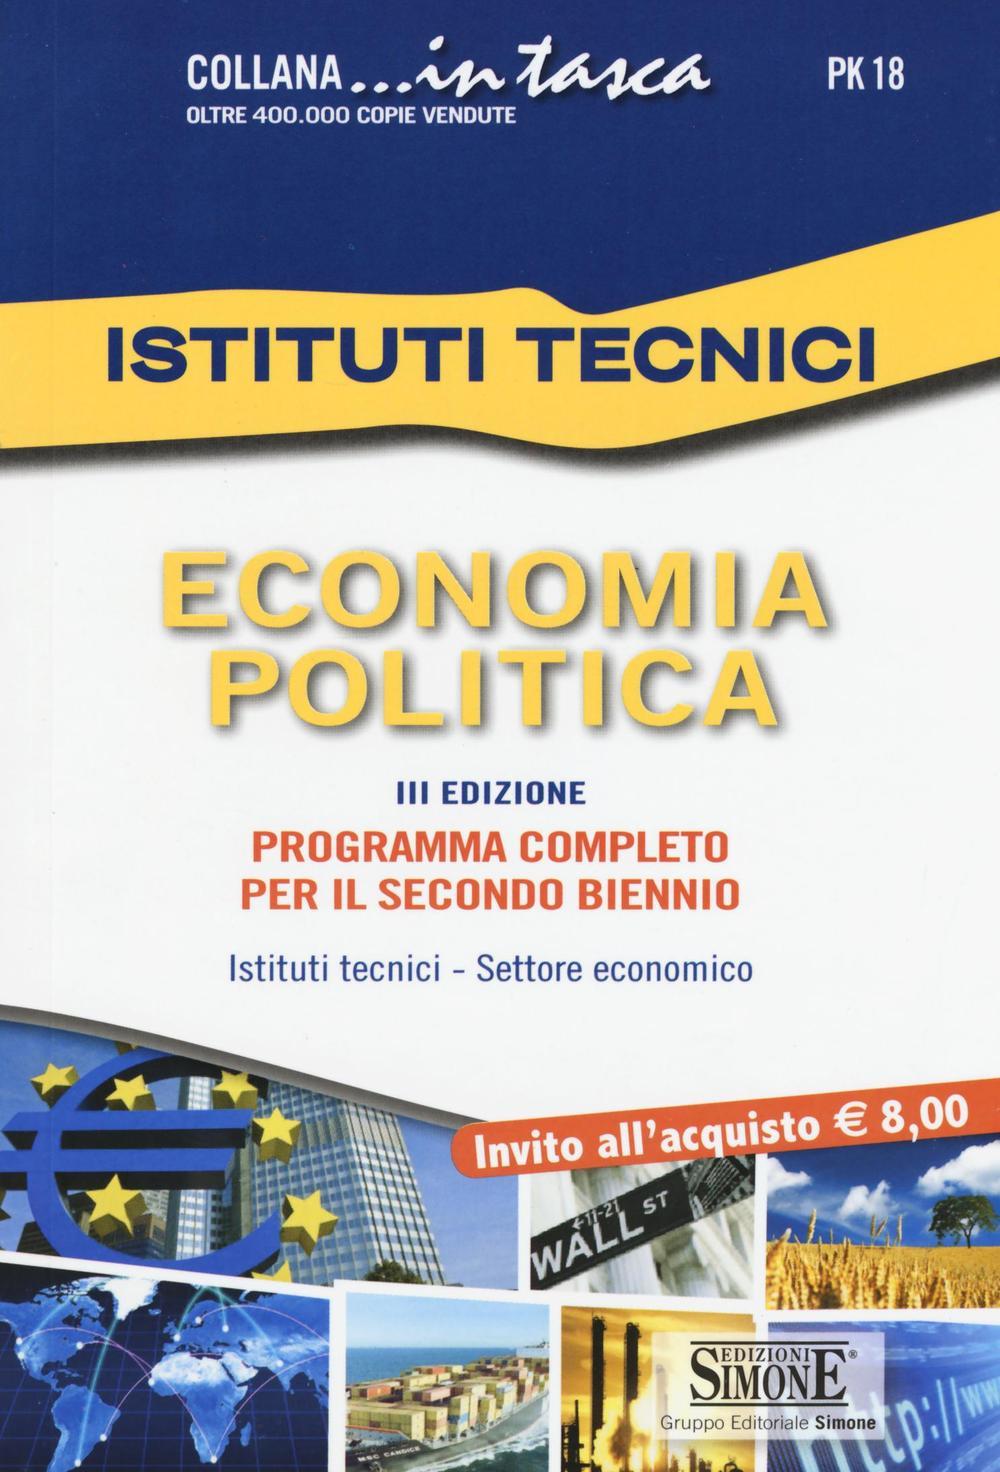 [Ebook] Istituti Tecnici - Economia politica